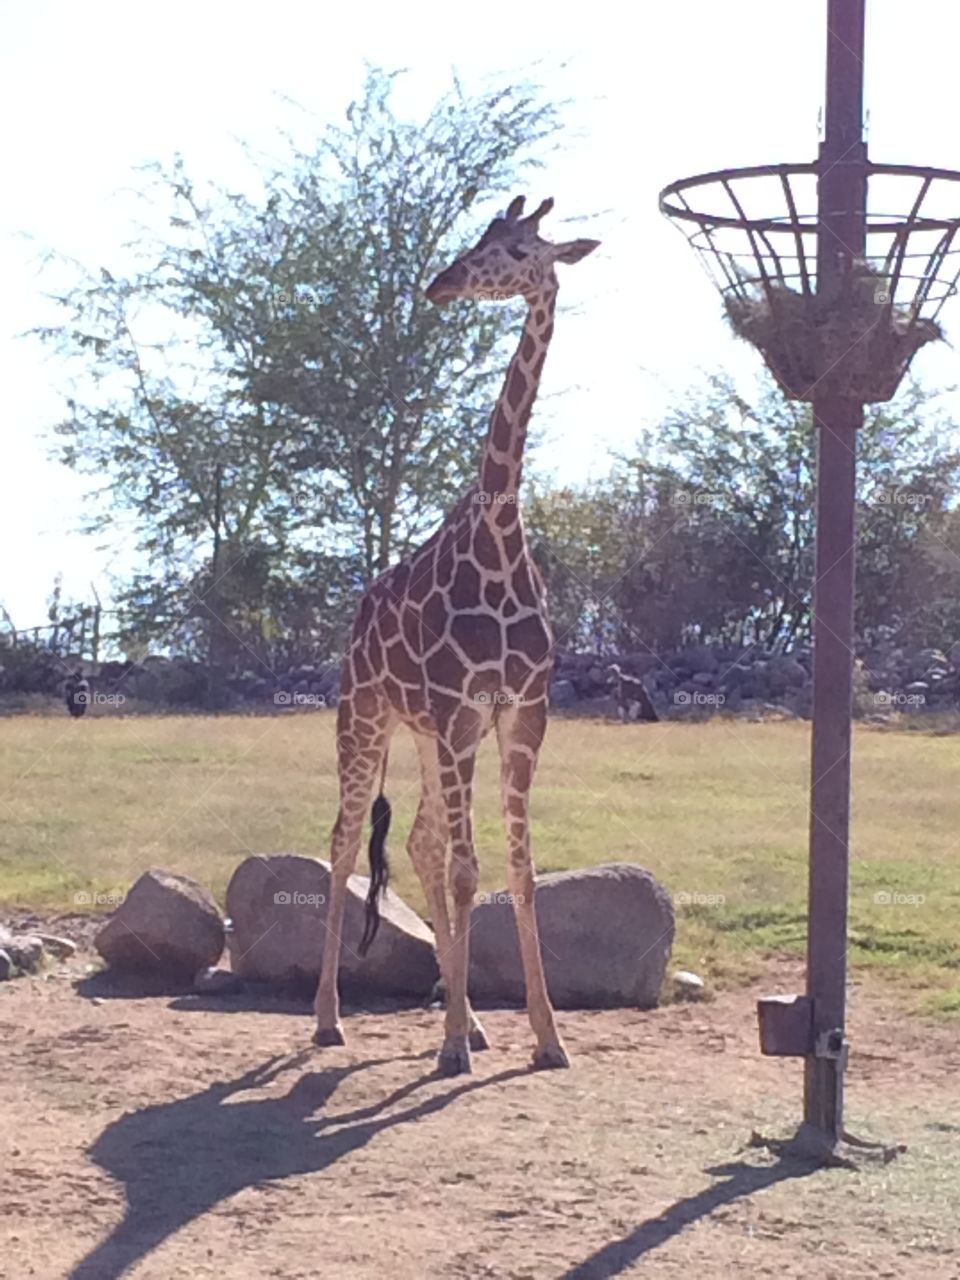 Giraffe at zoo